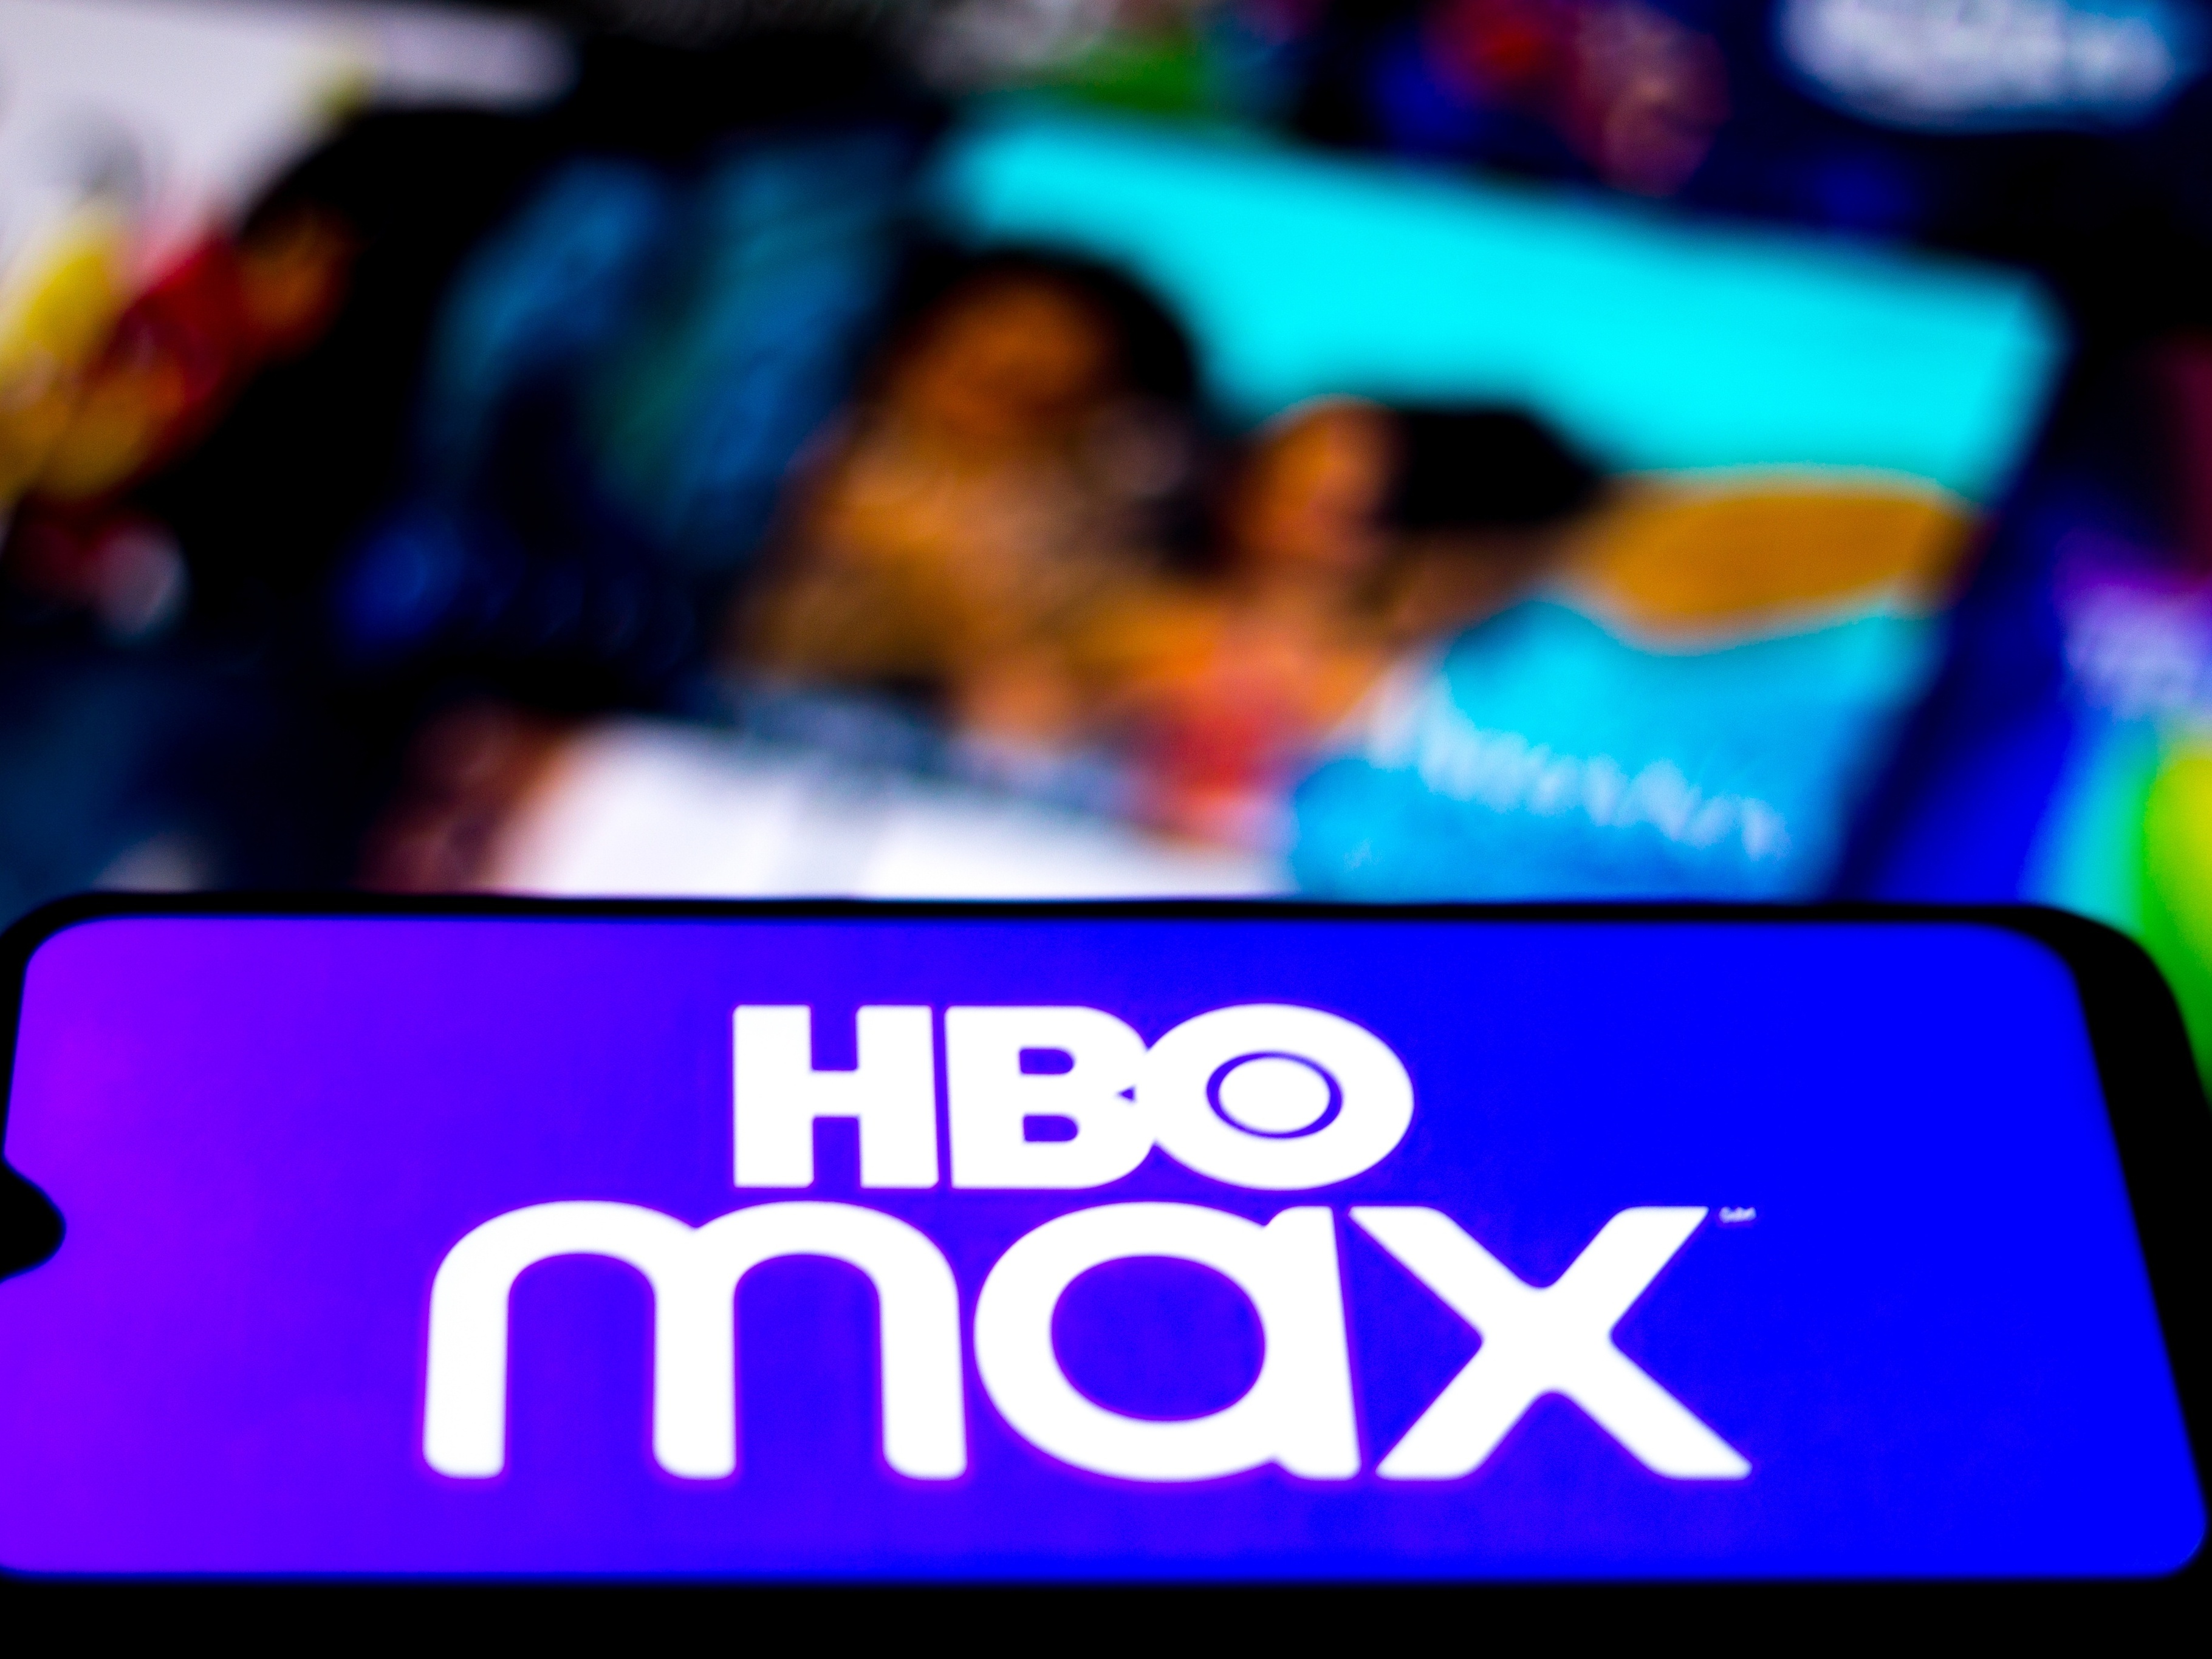 HBO Max Brasil on X: Renovando todas as metas de 2021 que eu não